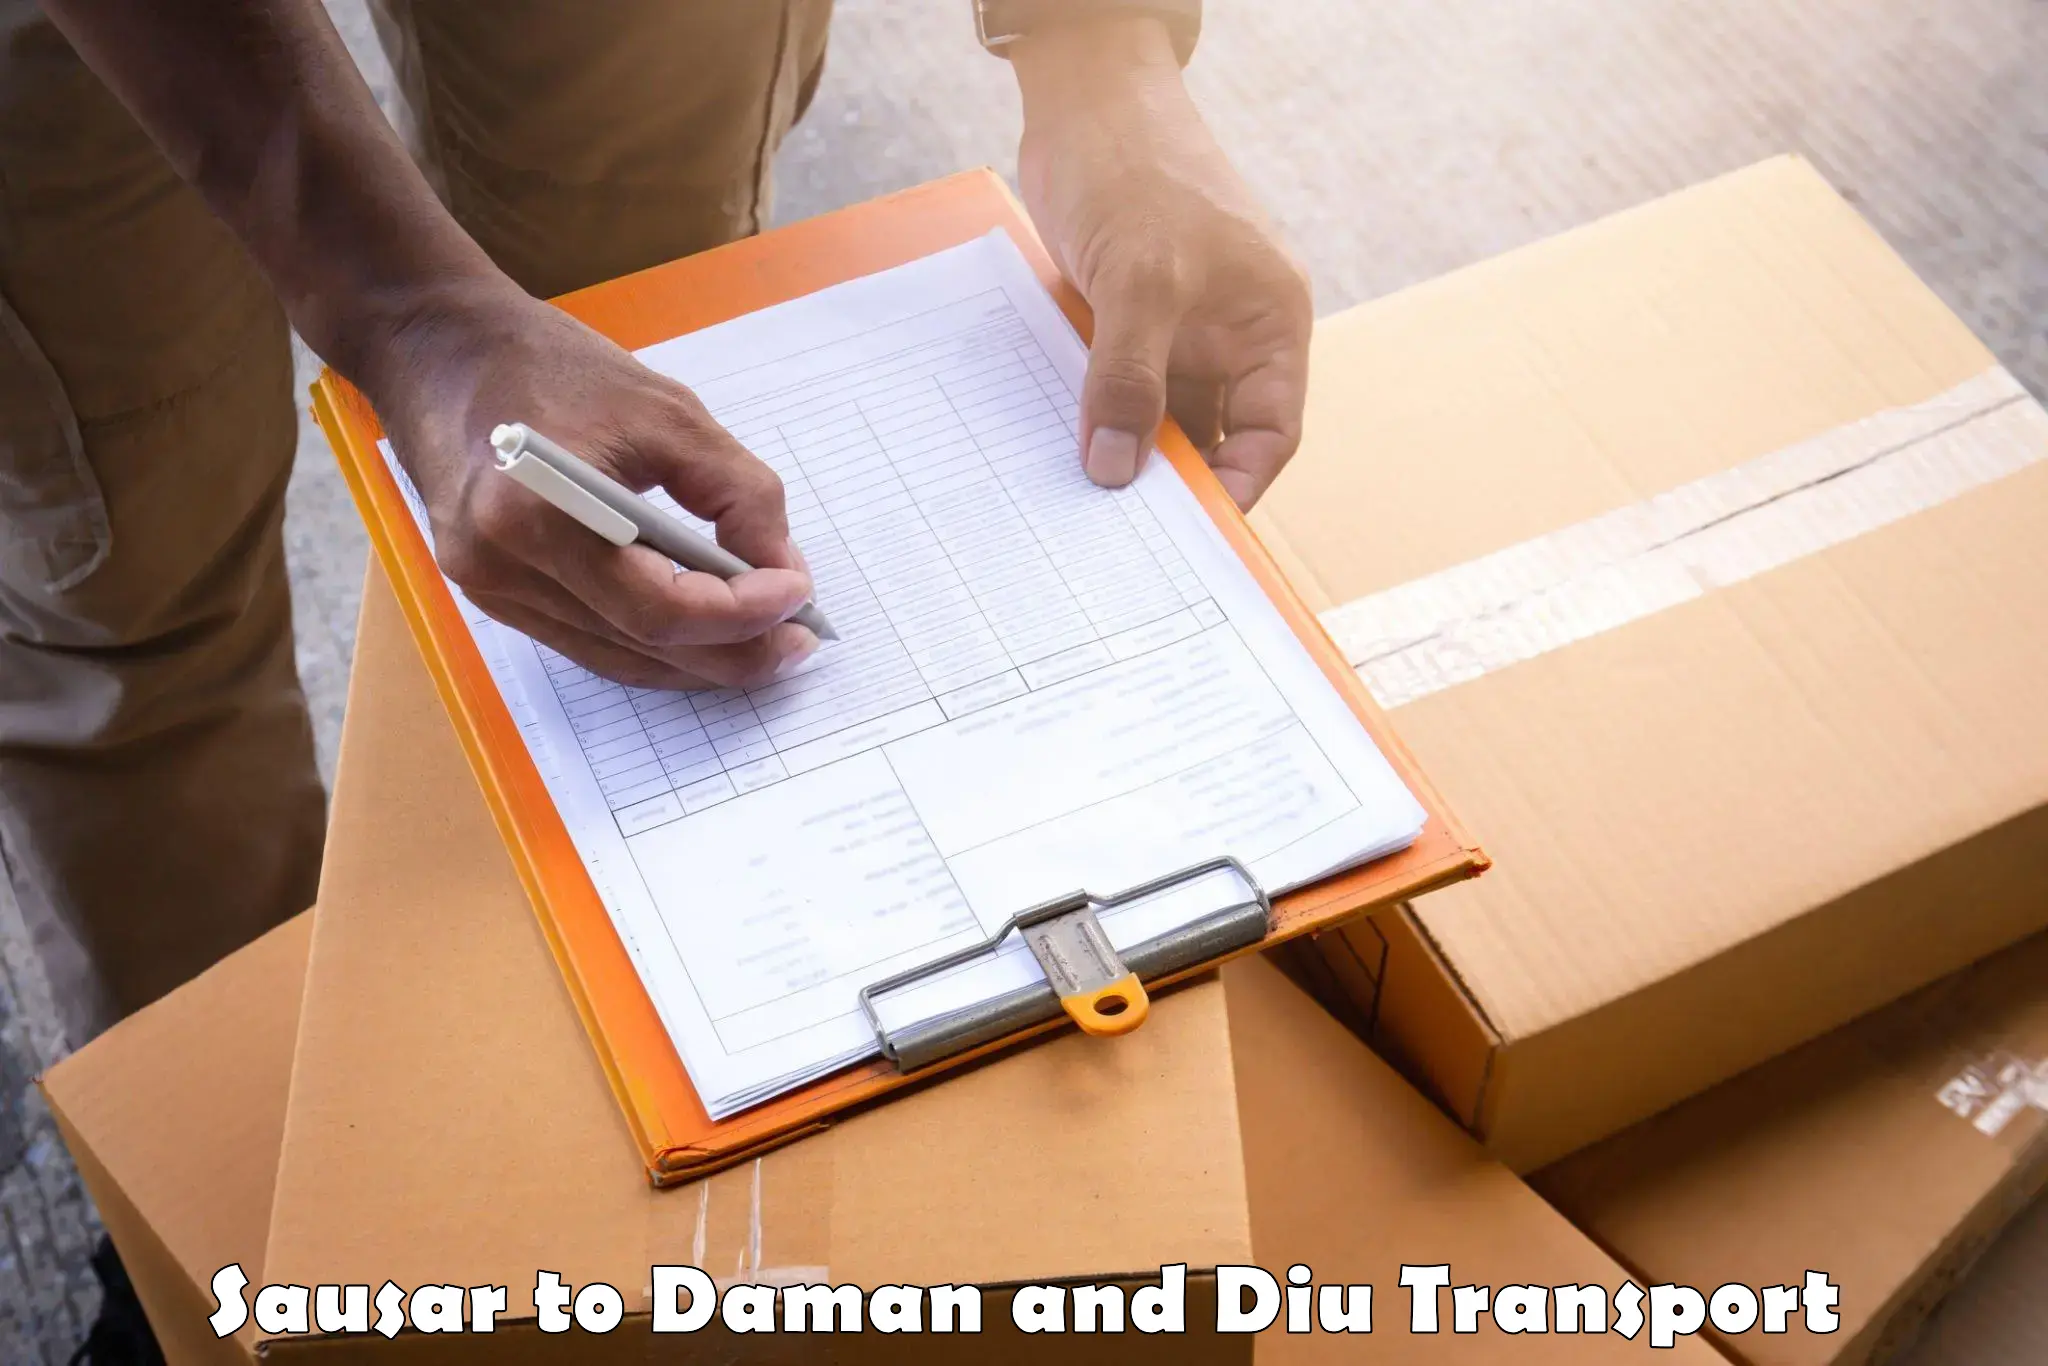 Cargo transportation services Sausar to Daman and Diu